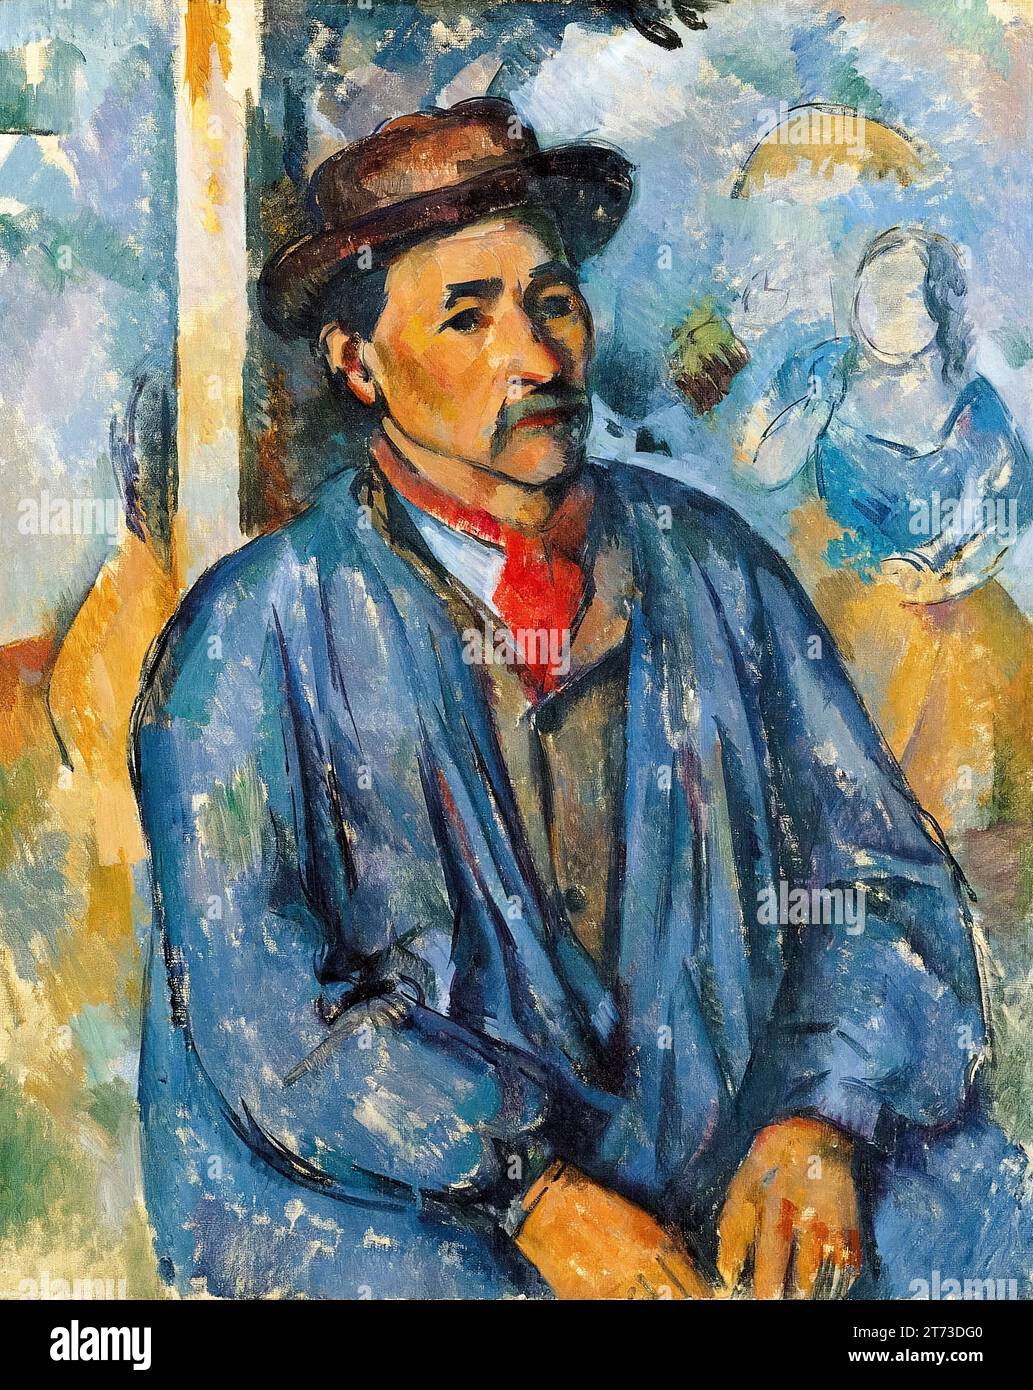 Paul Cézanne, Man in a Blue Smock, portrait à l'huile sur toile, 1896-1897 Banque D'Images